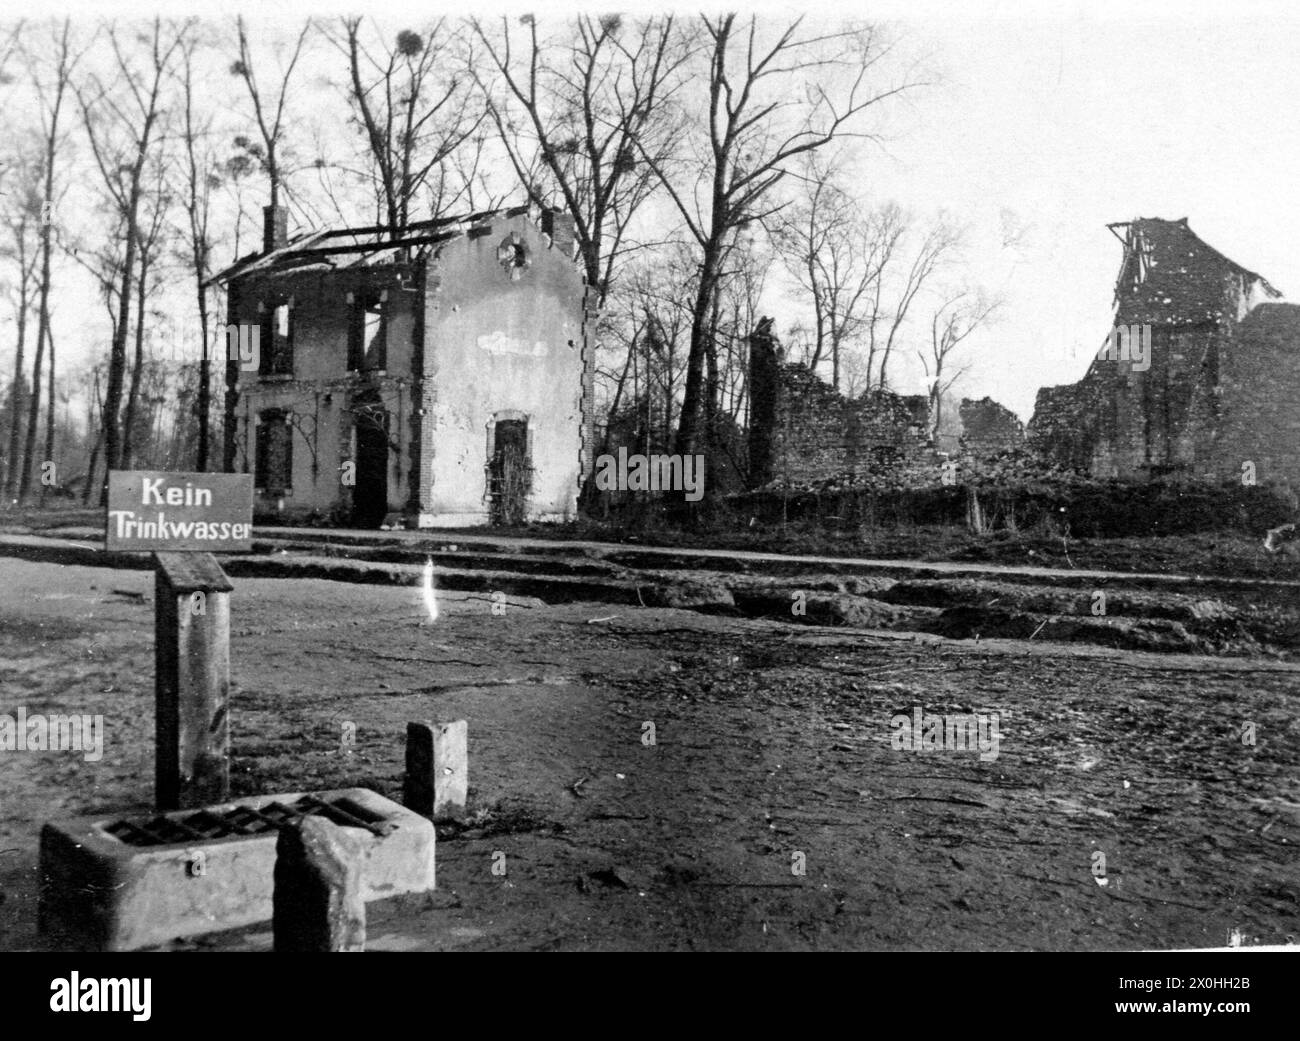 Ein Schild mit der Aufschrift 'Kein Trinkwasser' vor zerstörten Häusern in Craonne in Frankreich während des Ersten Weltkrieges. (Aufnahmedatum : 01.01.1914-31.12.1914) Banque D'Images